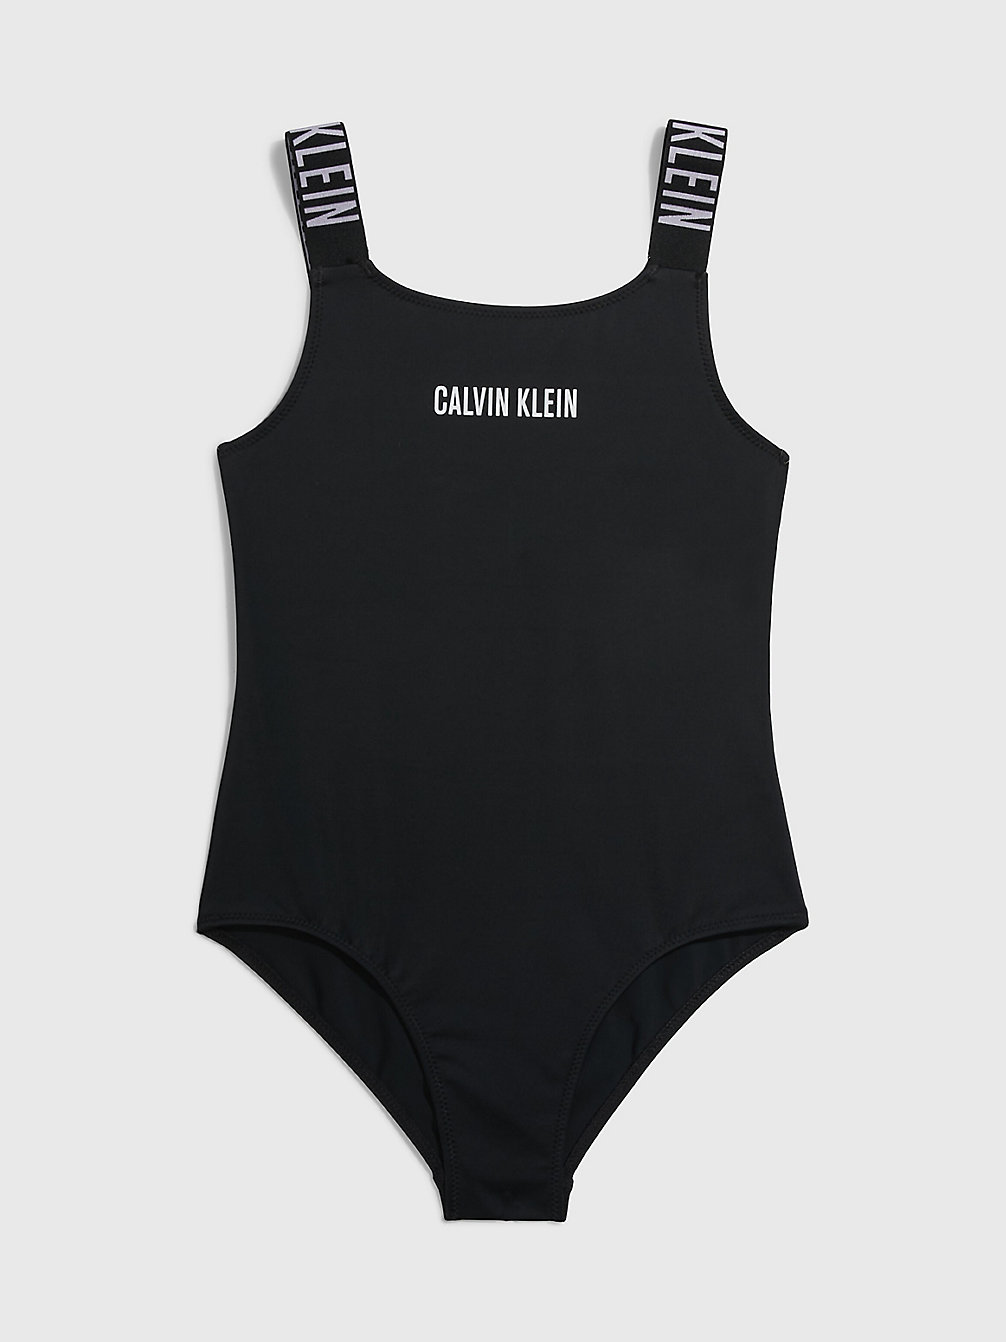 PVH BLACK Badeanzug Für Mädchen - Intense Power undefined Maedchen Calvin Klein